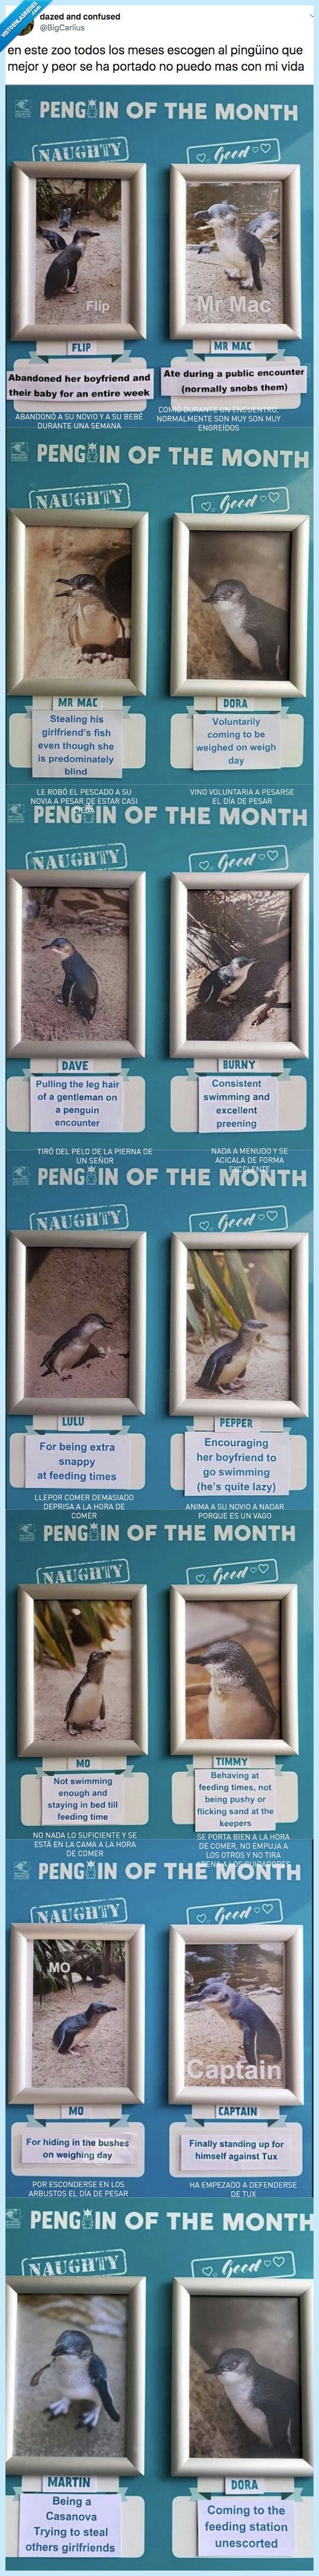 525280 - Entregan el premio al pingüino del mes y al más travieso y después de esto queremos ser cuidadores de pingüinos, por @BigCarlius